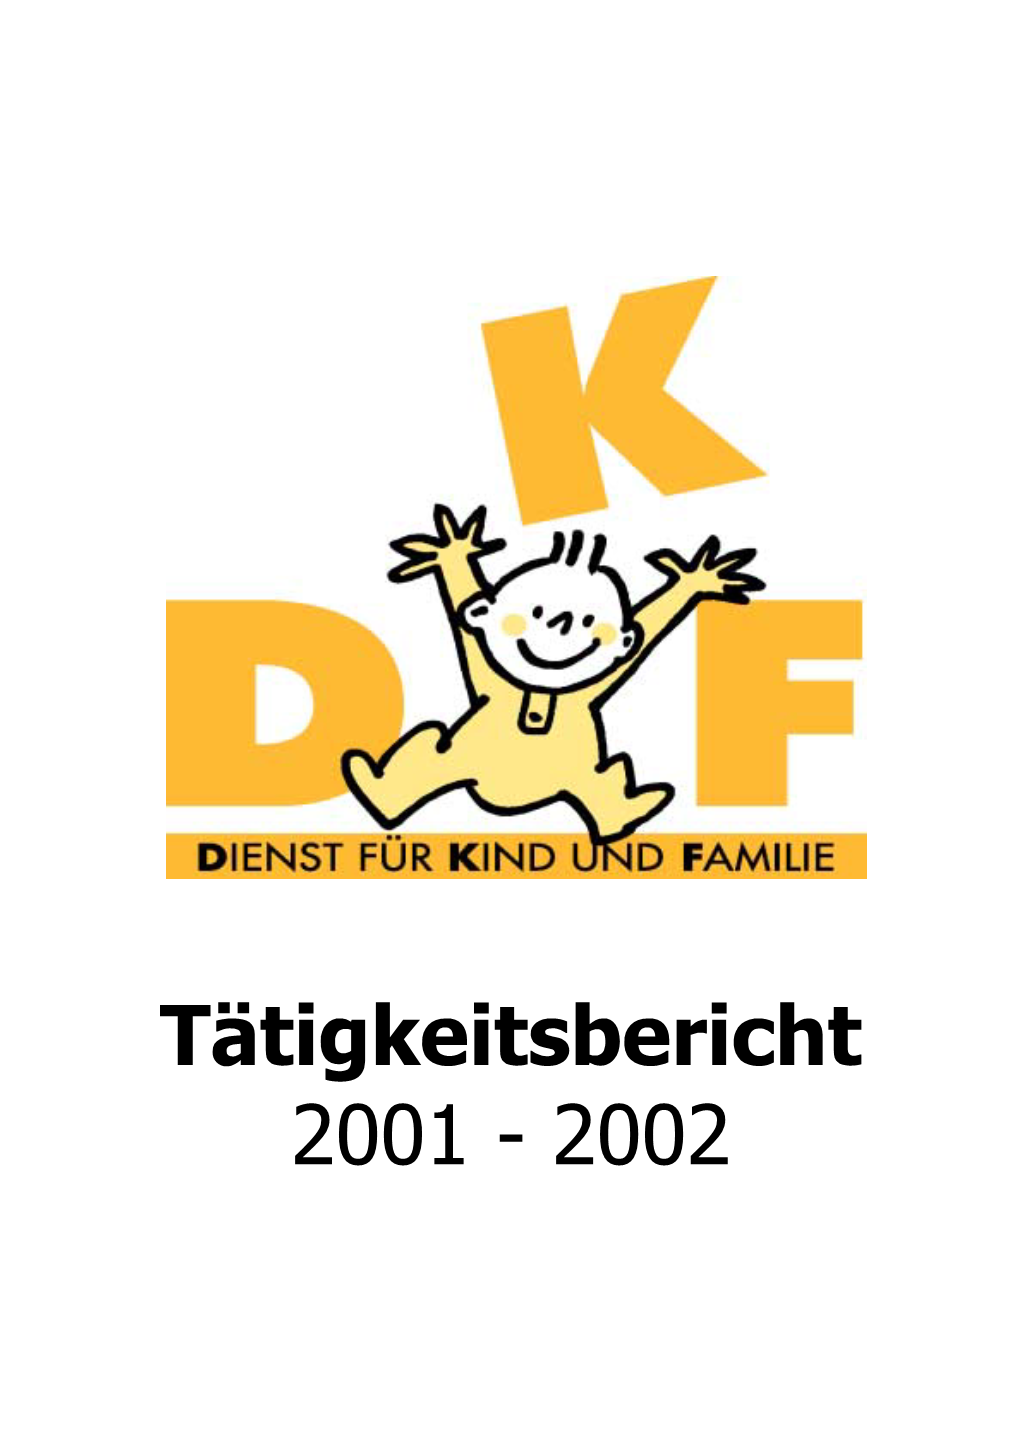 Kind Und Familie“ in Der Deutschsprachigen Gemeinschaft 3